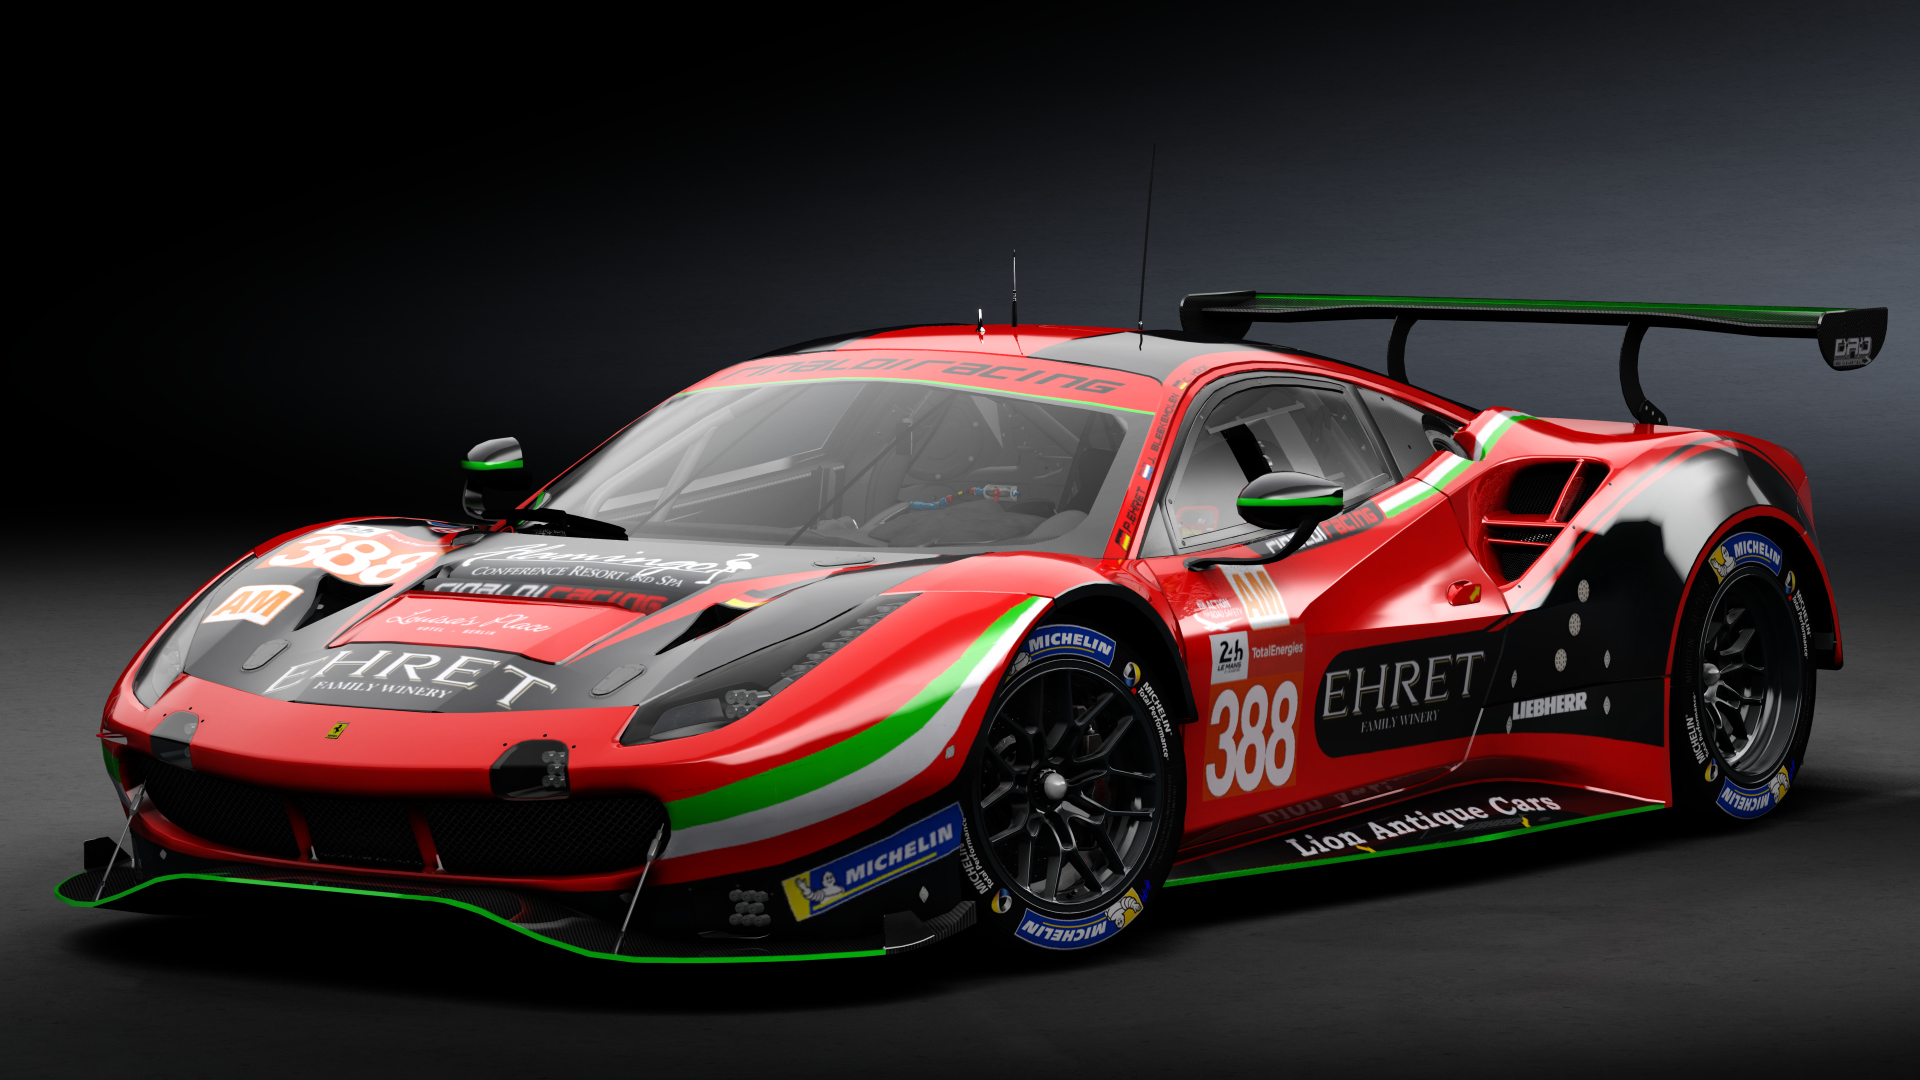 2018 Ferrari 488 GTE Evo Le Mans Spec [Michelotto], skin 2021 #388 Rinaldi Racing LM24